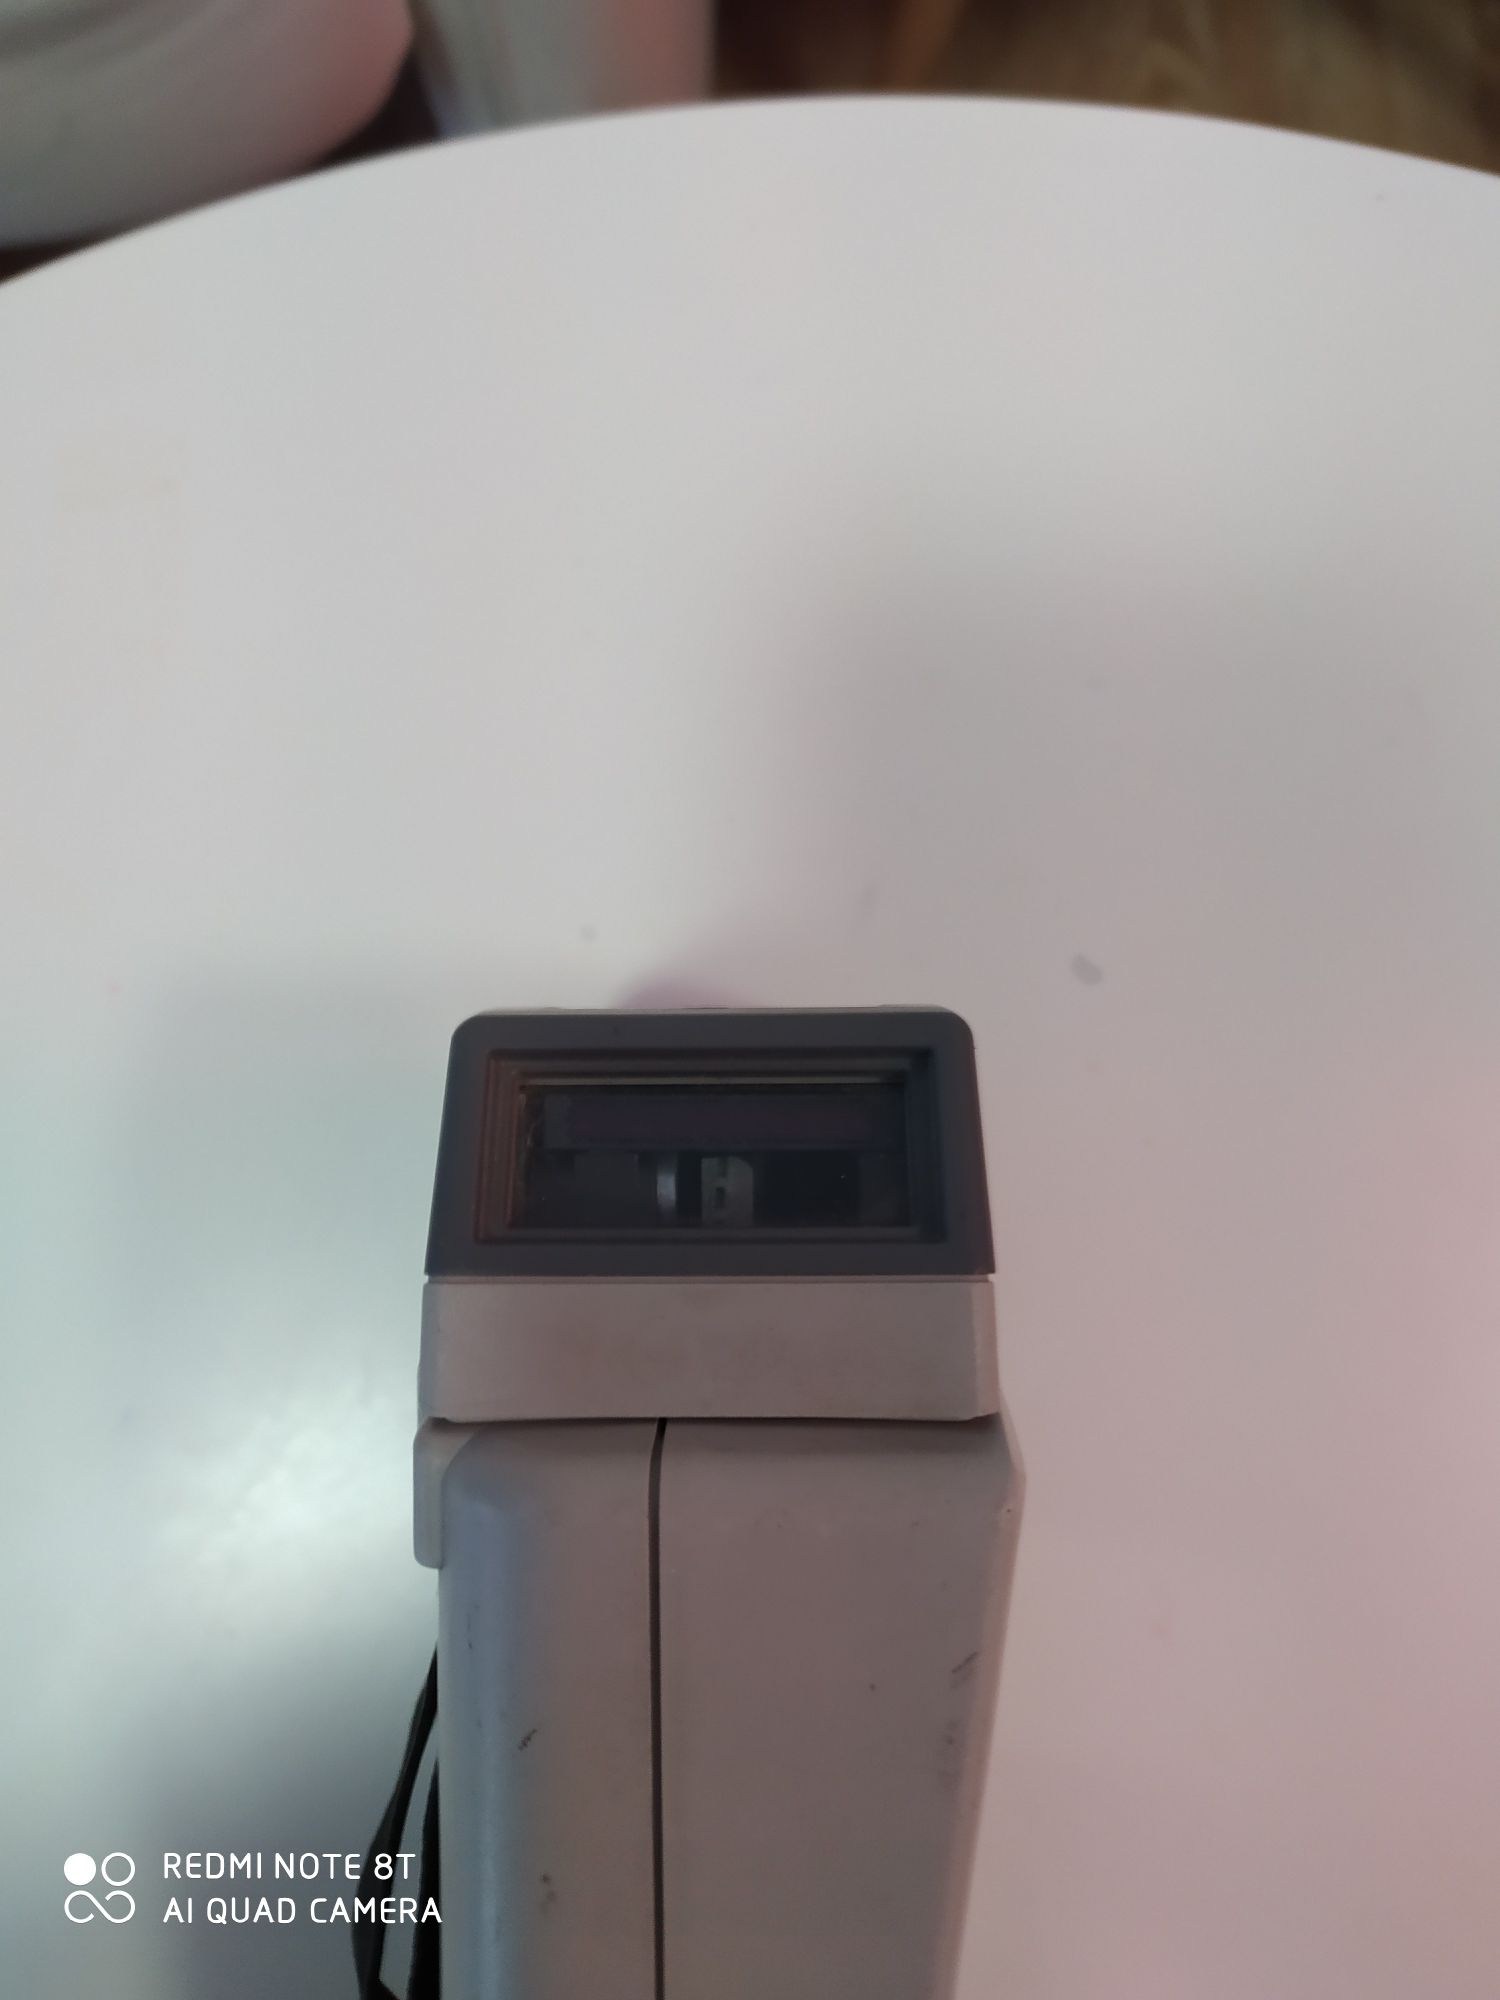 Мобилен баркод скенер Symbol PDT 3100